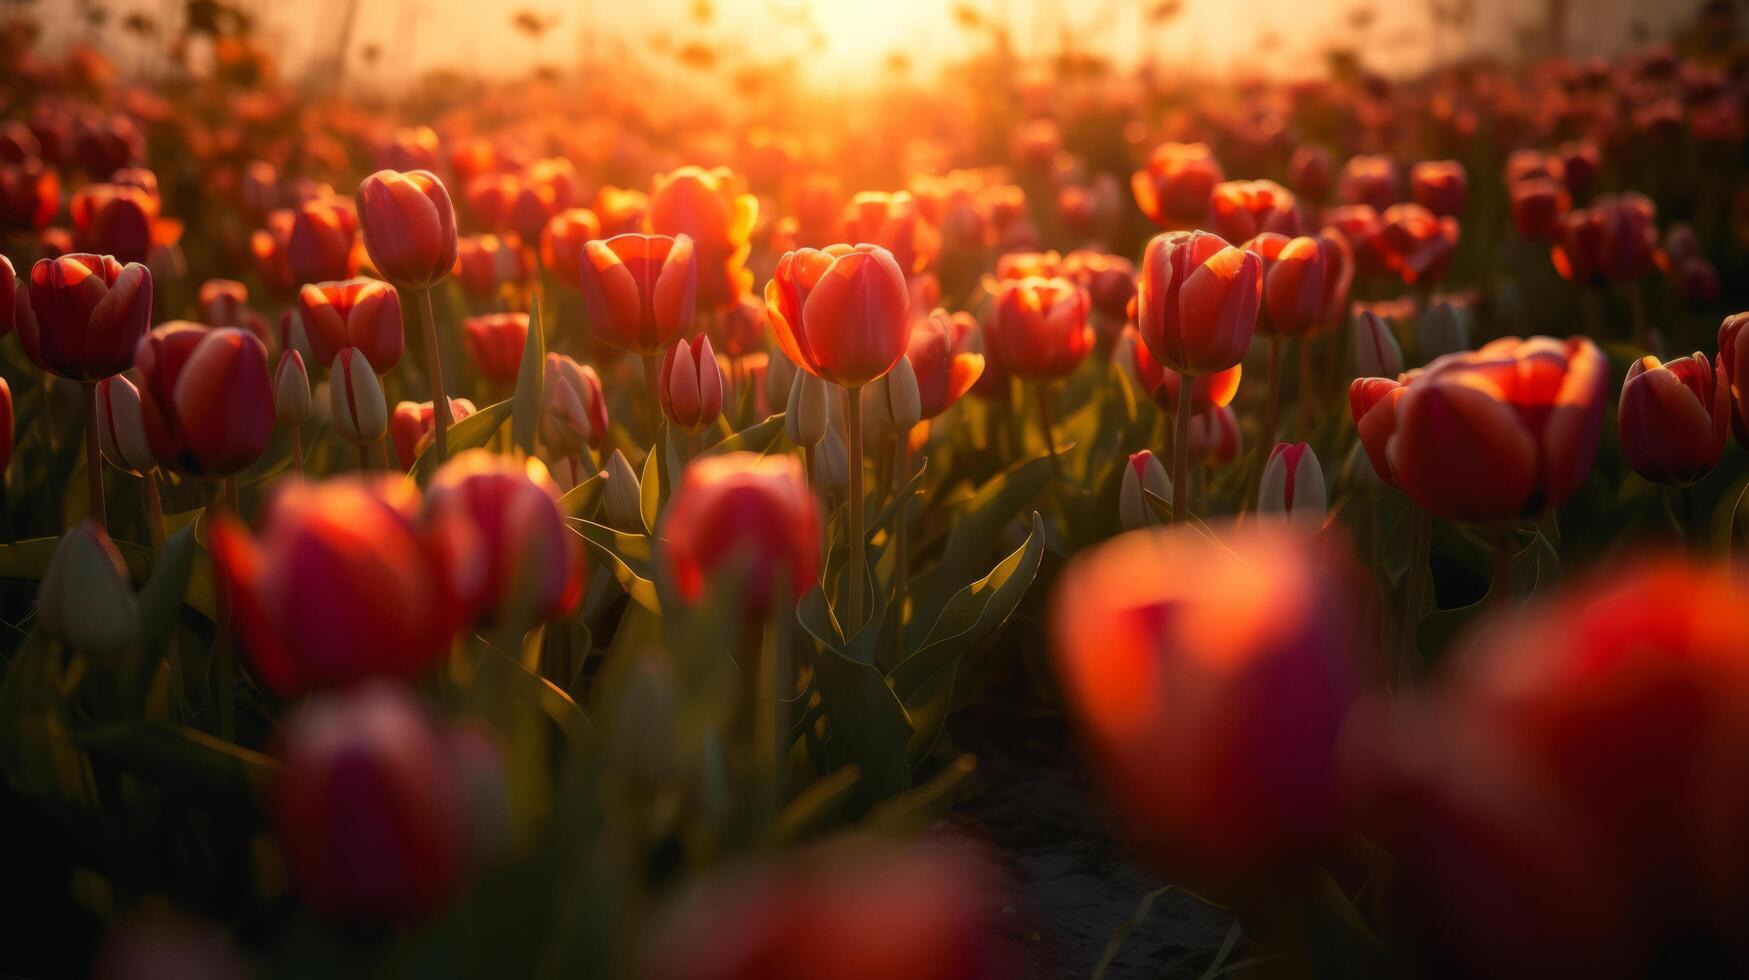 Tulips flower field. Illustration photo